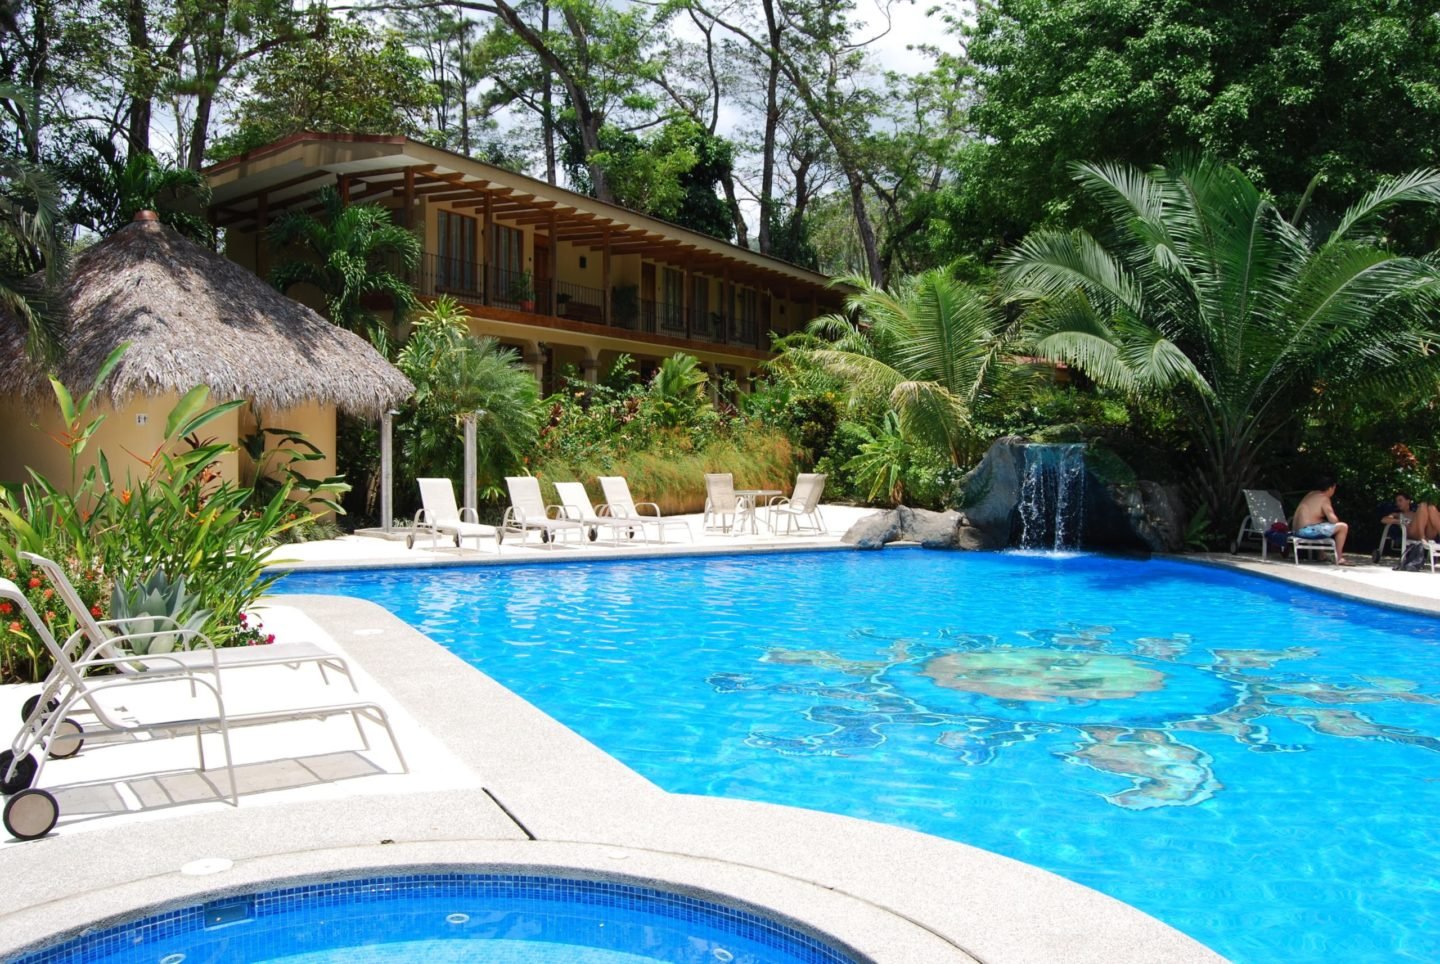 Swinger University Costa Rica Swinger Lifestyle Resort Takeover June 3-10th, 2023